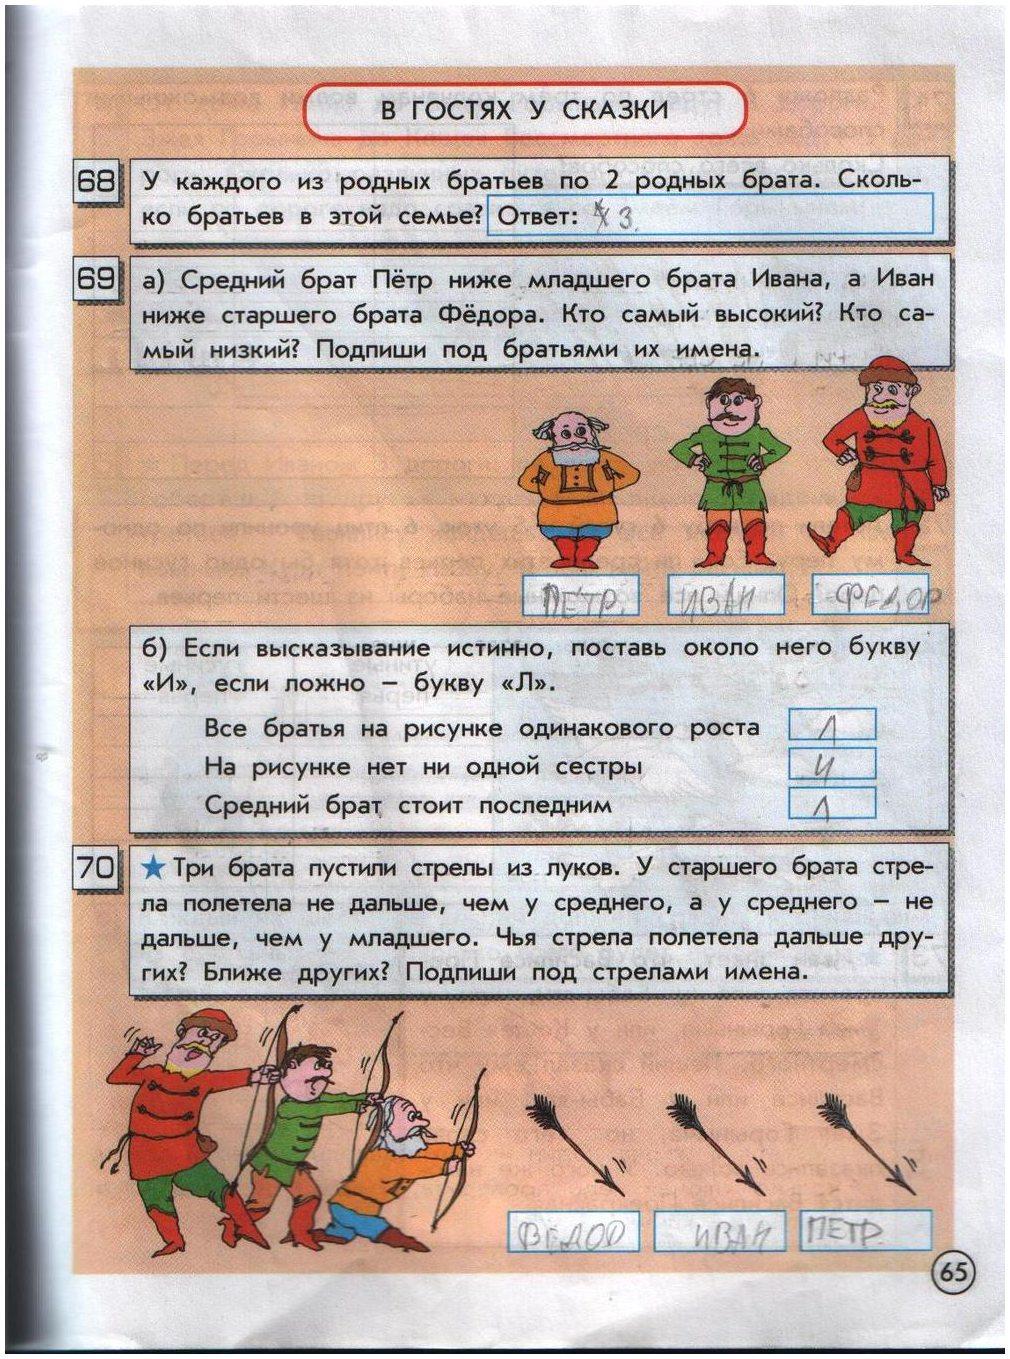 гдз 2 класс информатика часть 2 Горячев, Горина страница 65